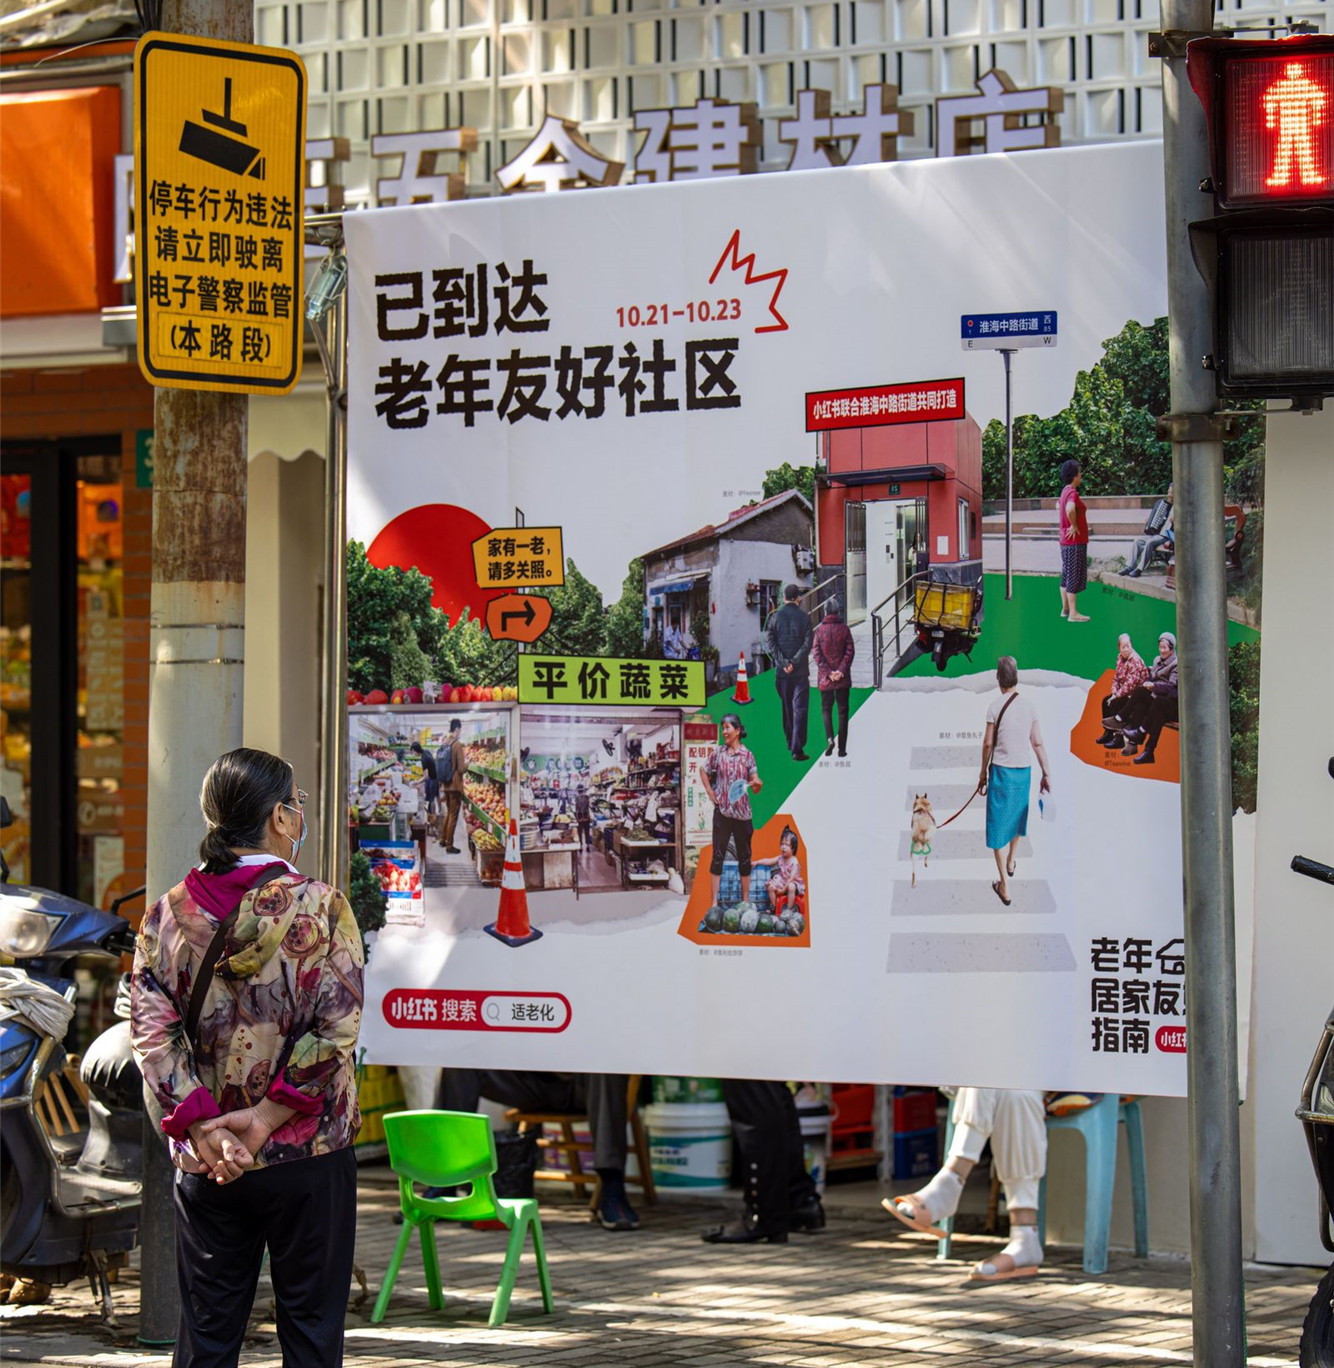 重阳节，小红书在上海造了一个老年友好社区